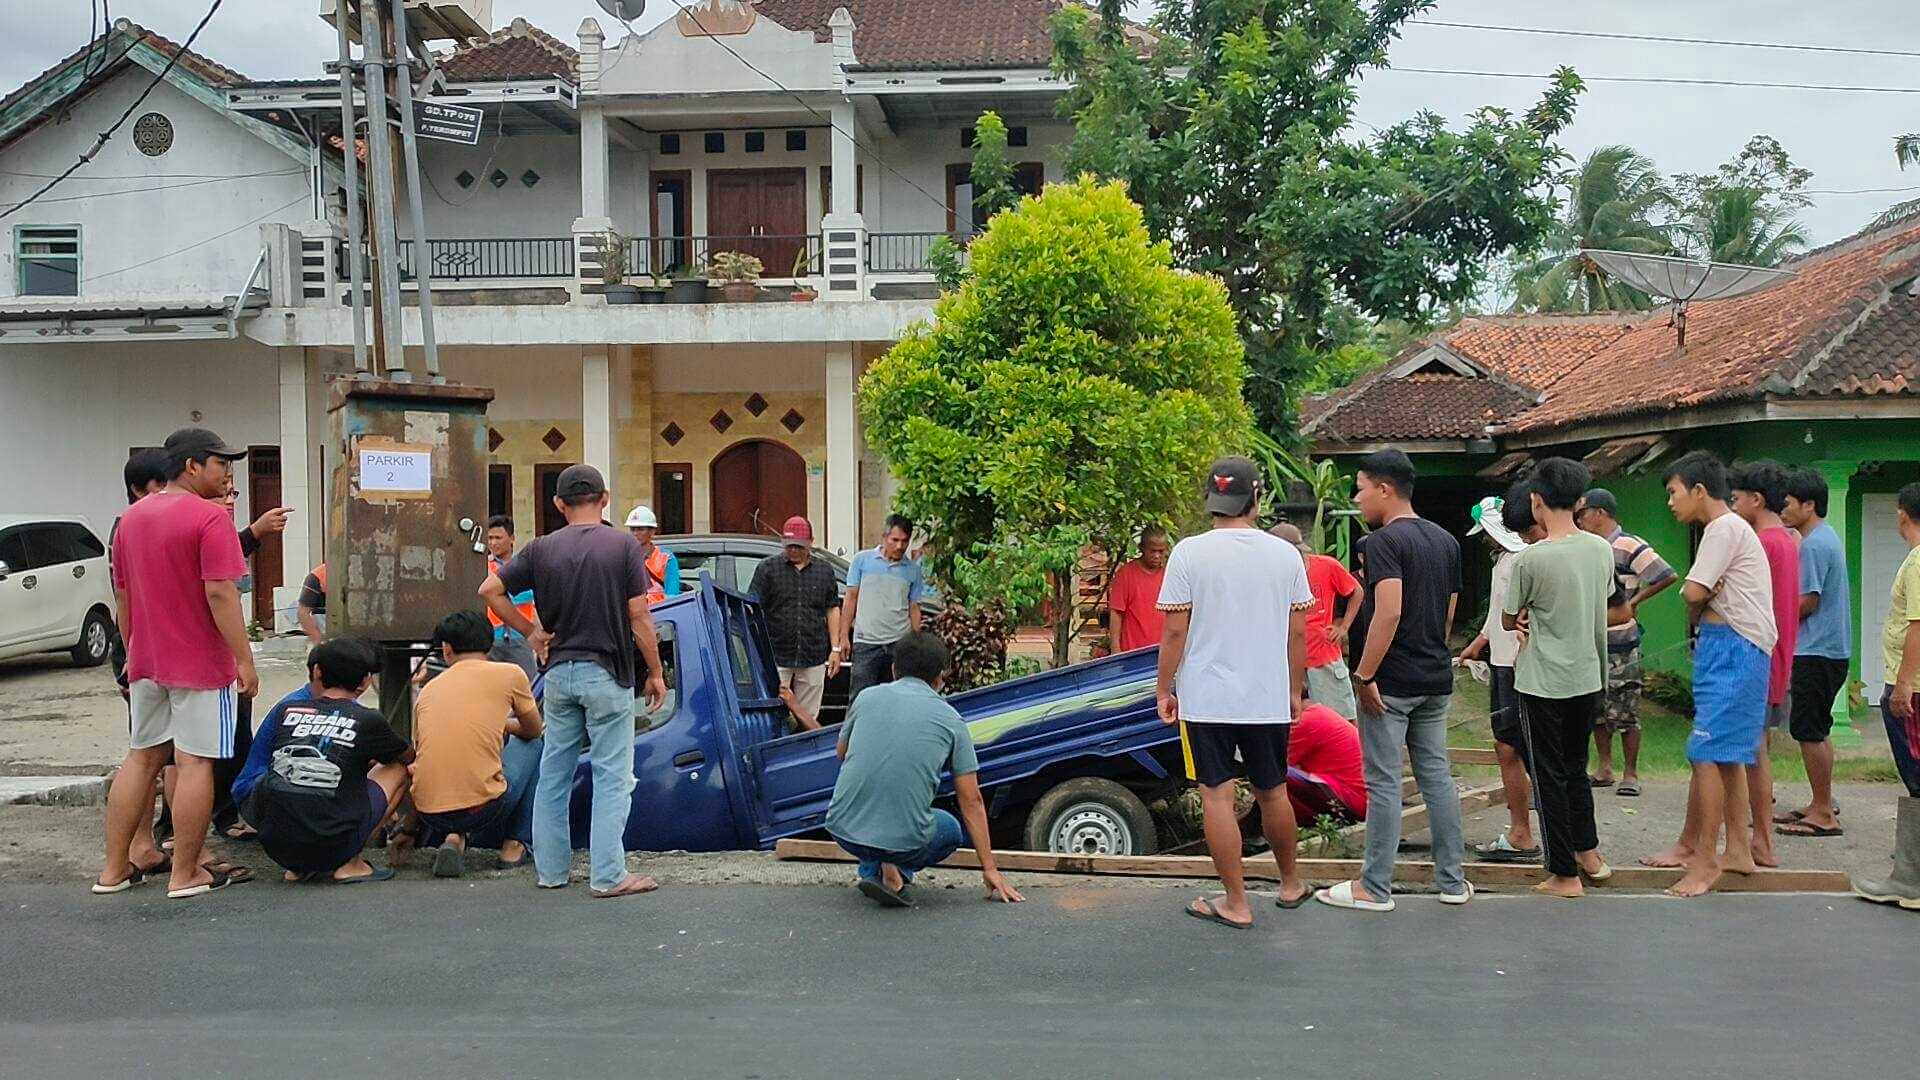 Mobil Pick-Up Terperosok ke Selokan di Talang Padang